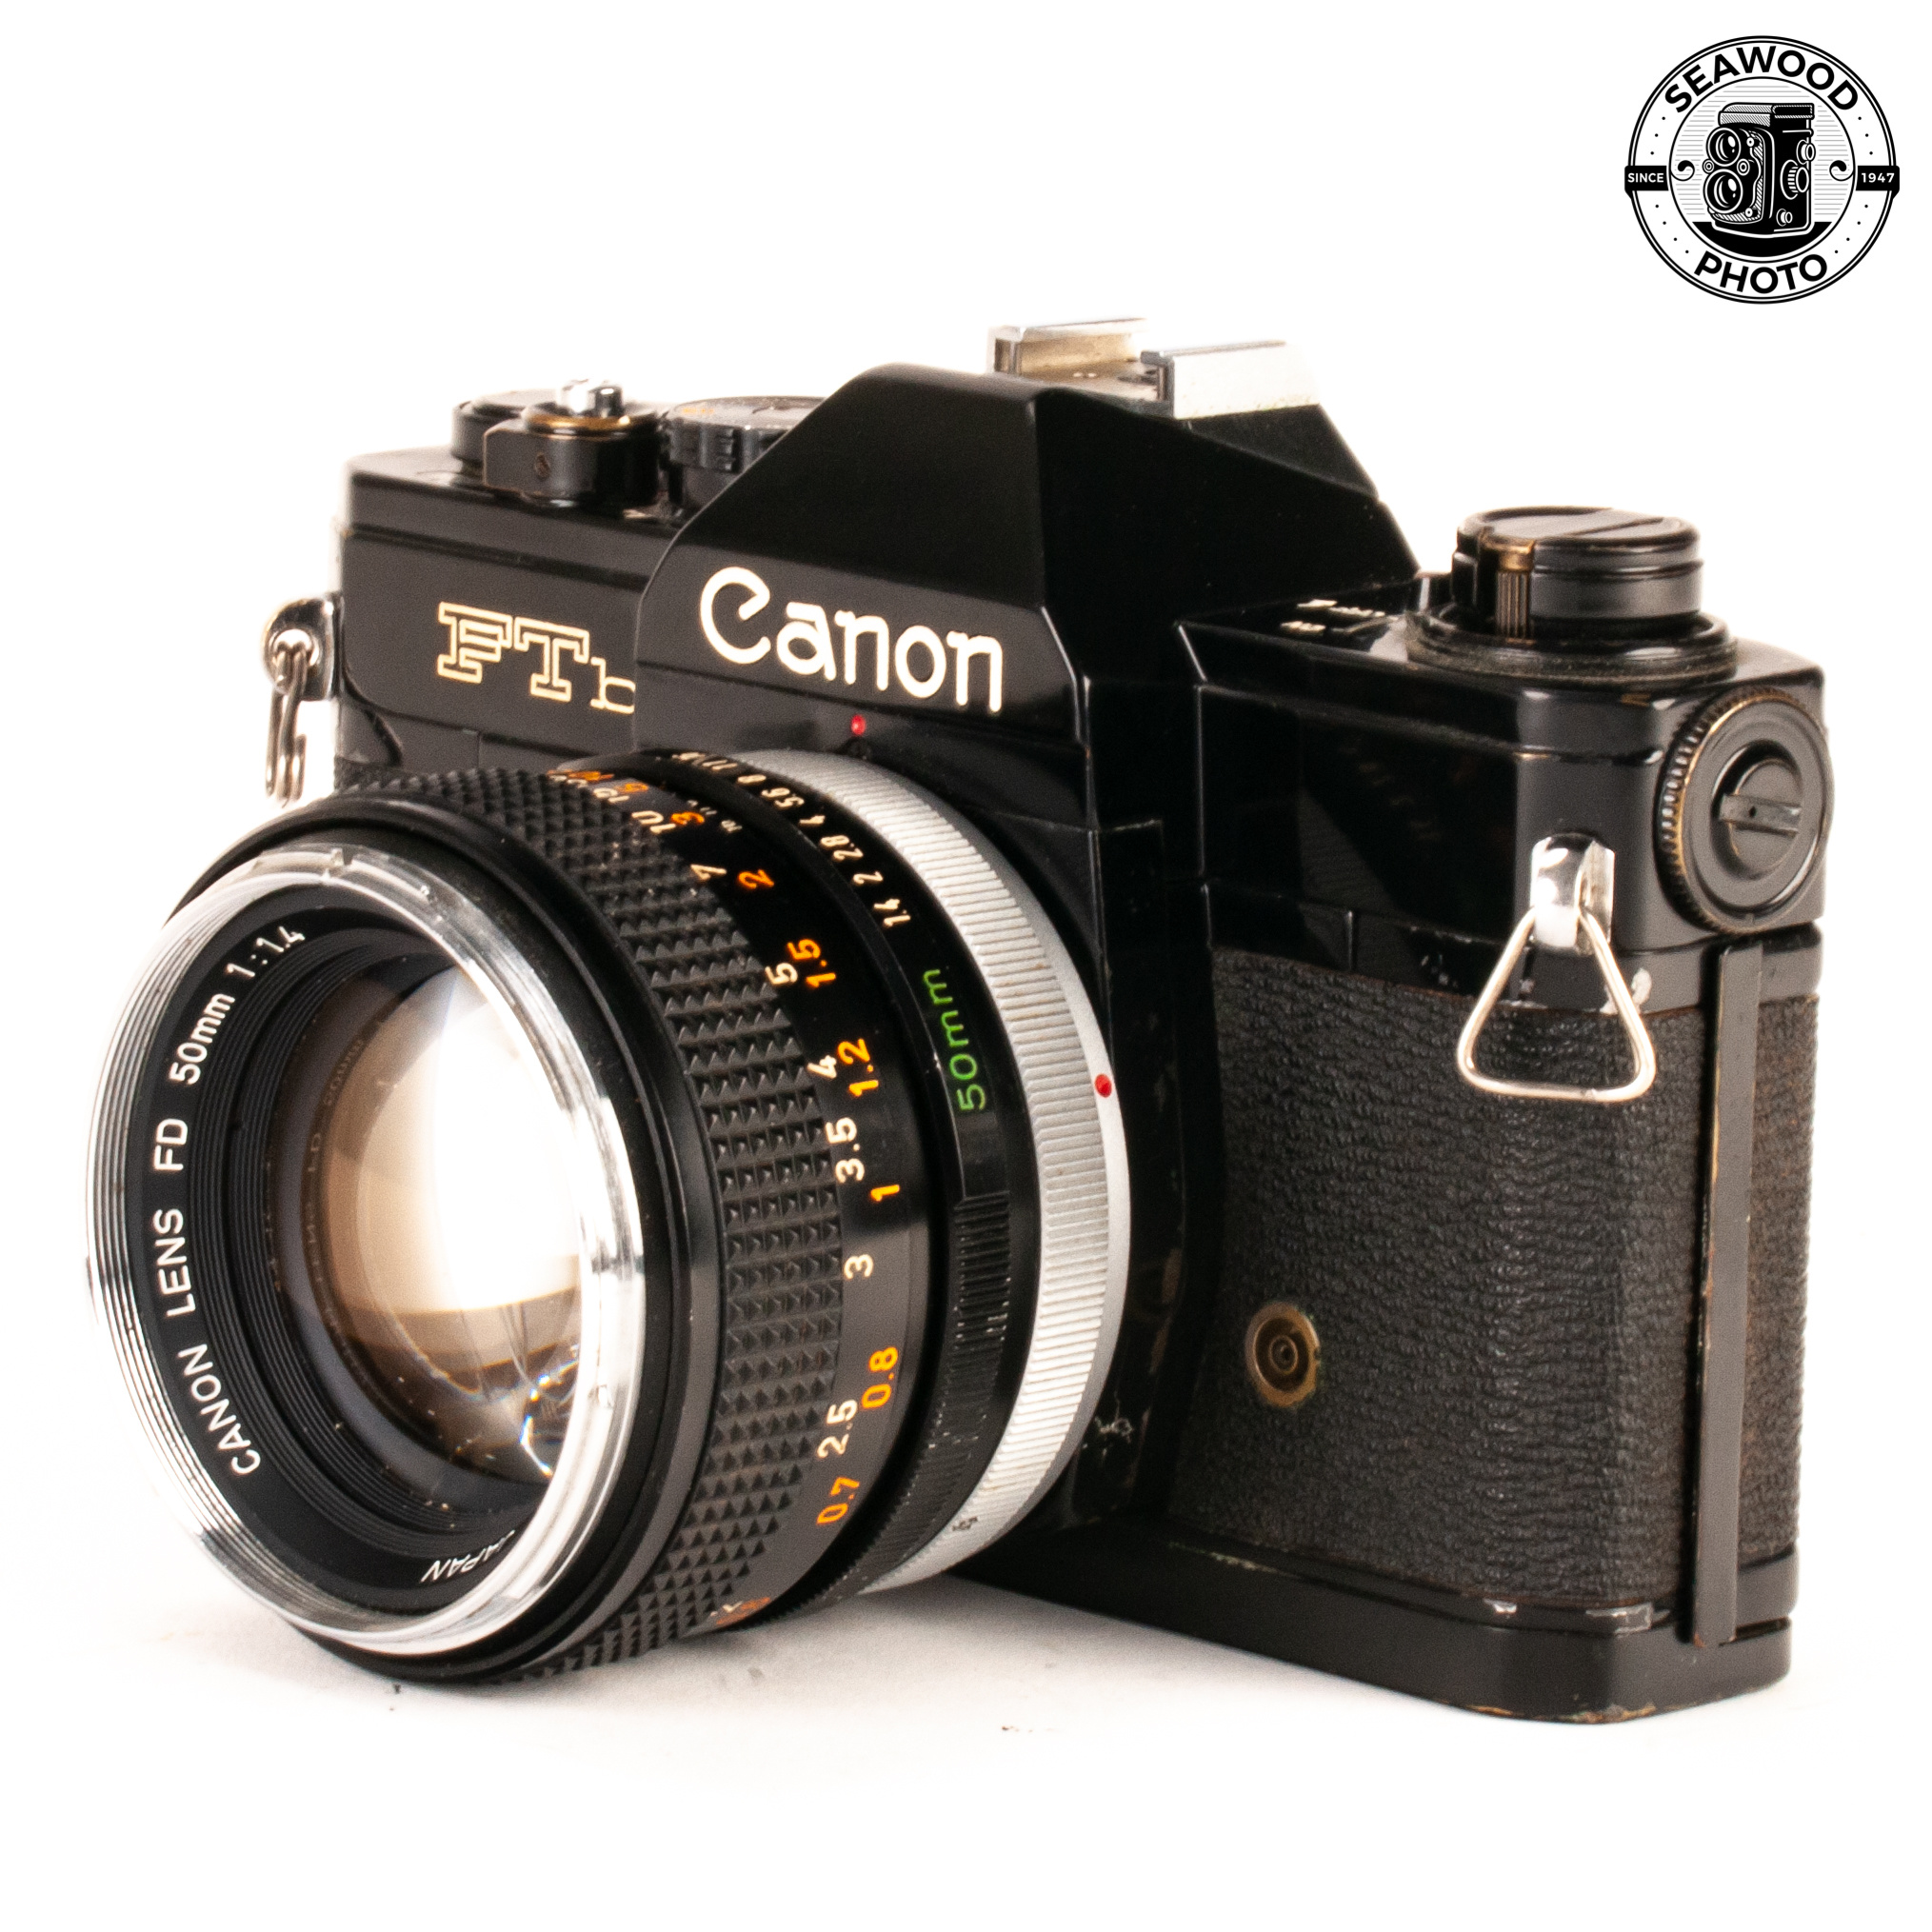 フィルム一眼レフカメラ Canon FTb - フィルムカメラ